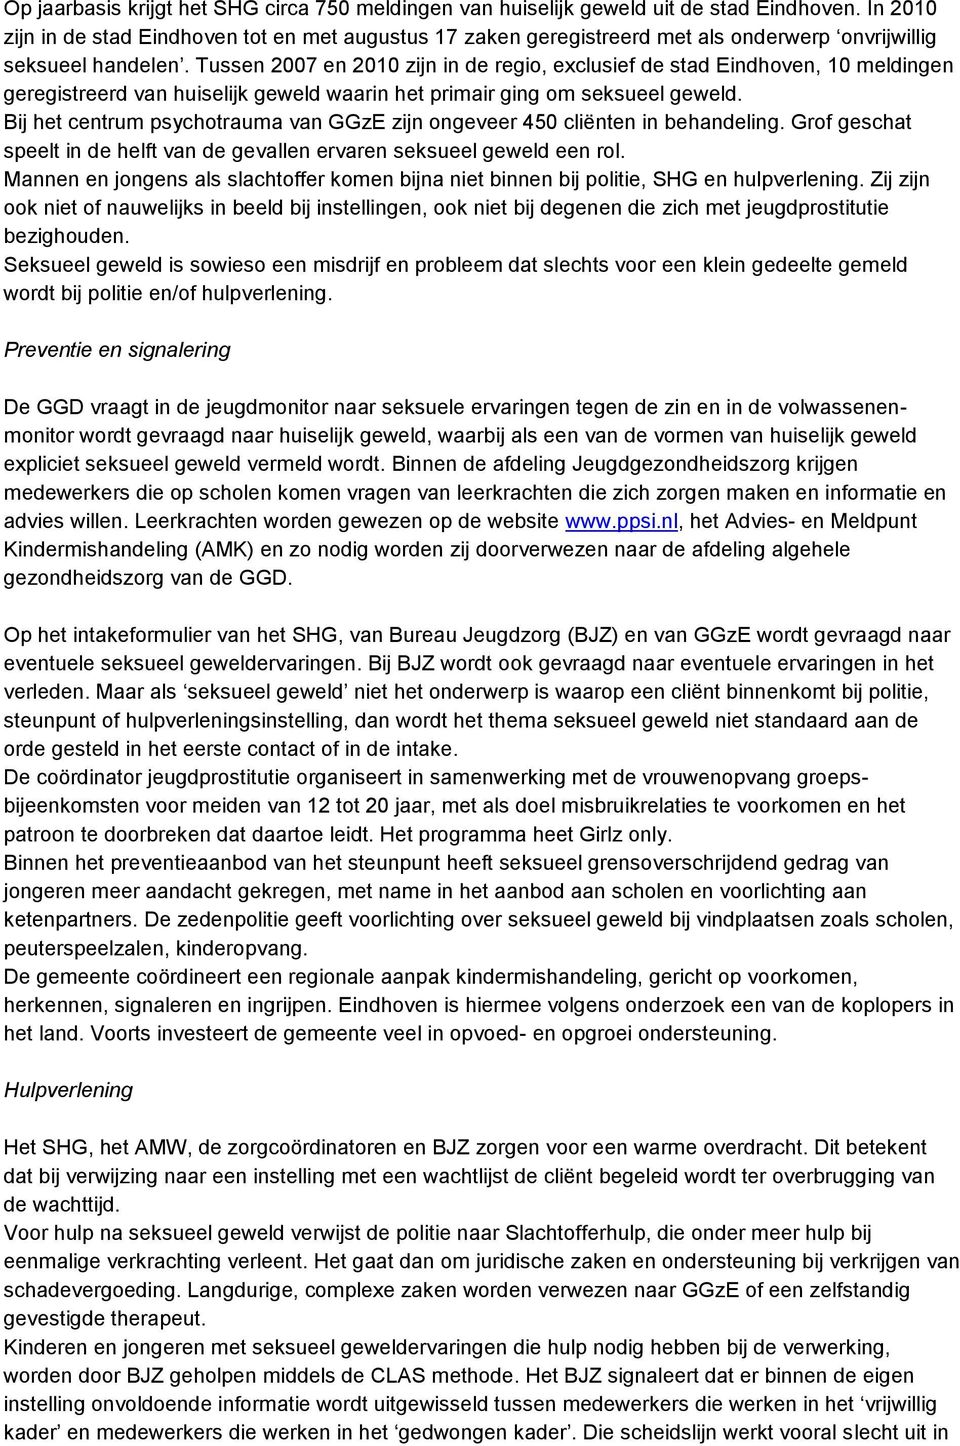 Tussen 2007 en 2010 zijn in de regio, exclusief de stad Eindhoven, 10 meldingen geregistreerd van huiselijk geweld waarin het primair ging om seksueel geweld.